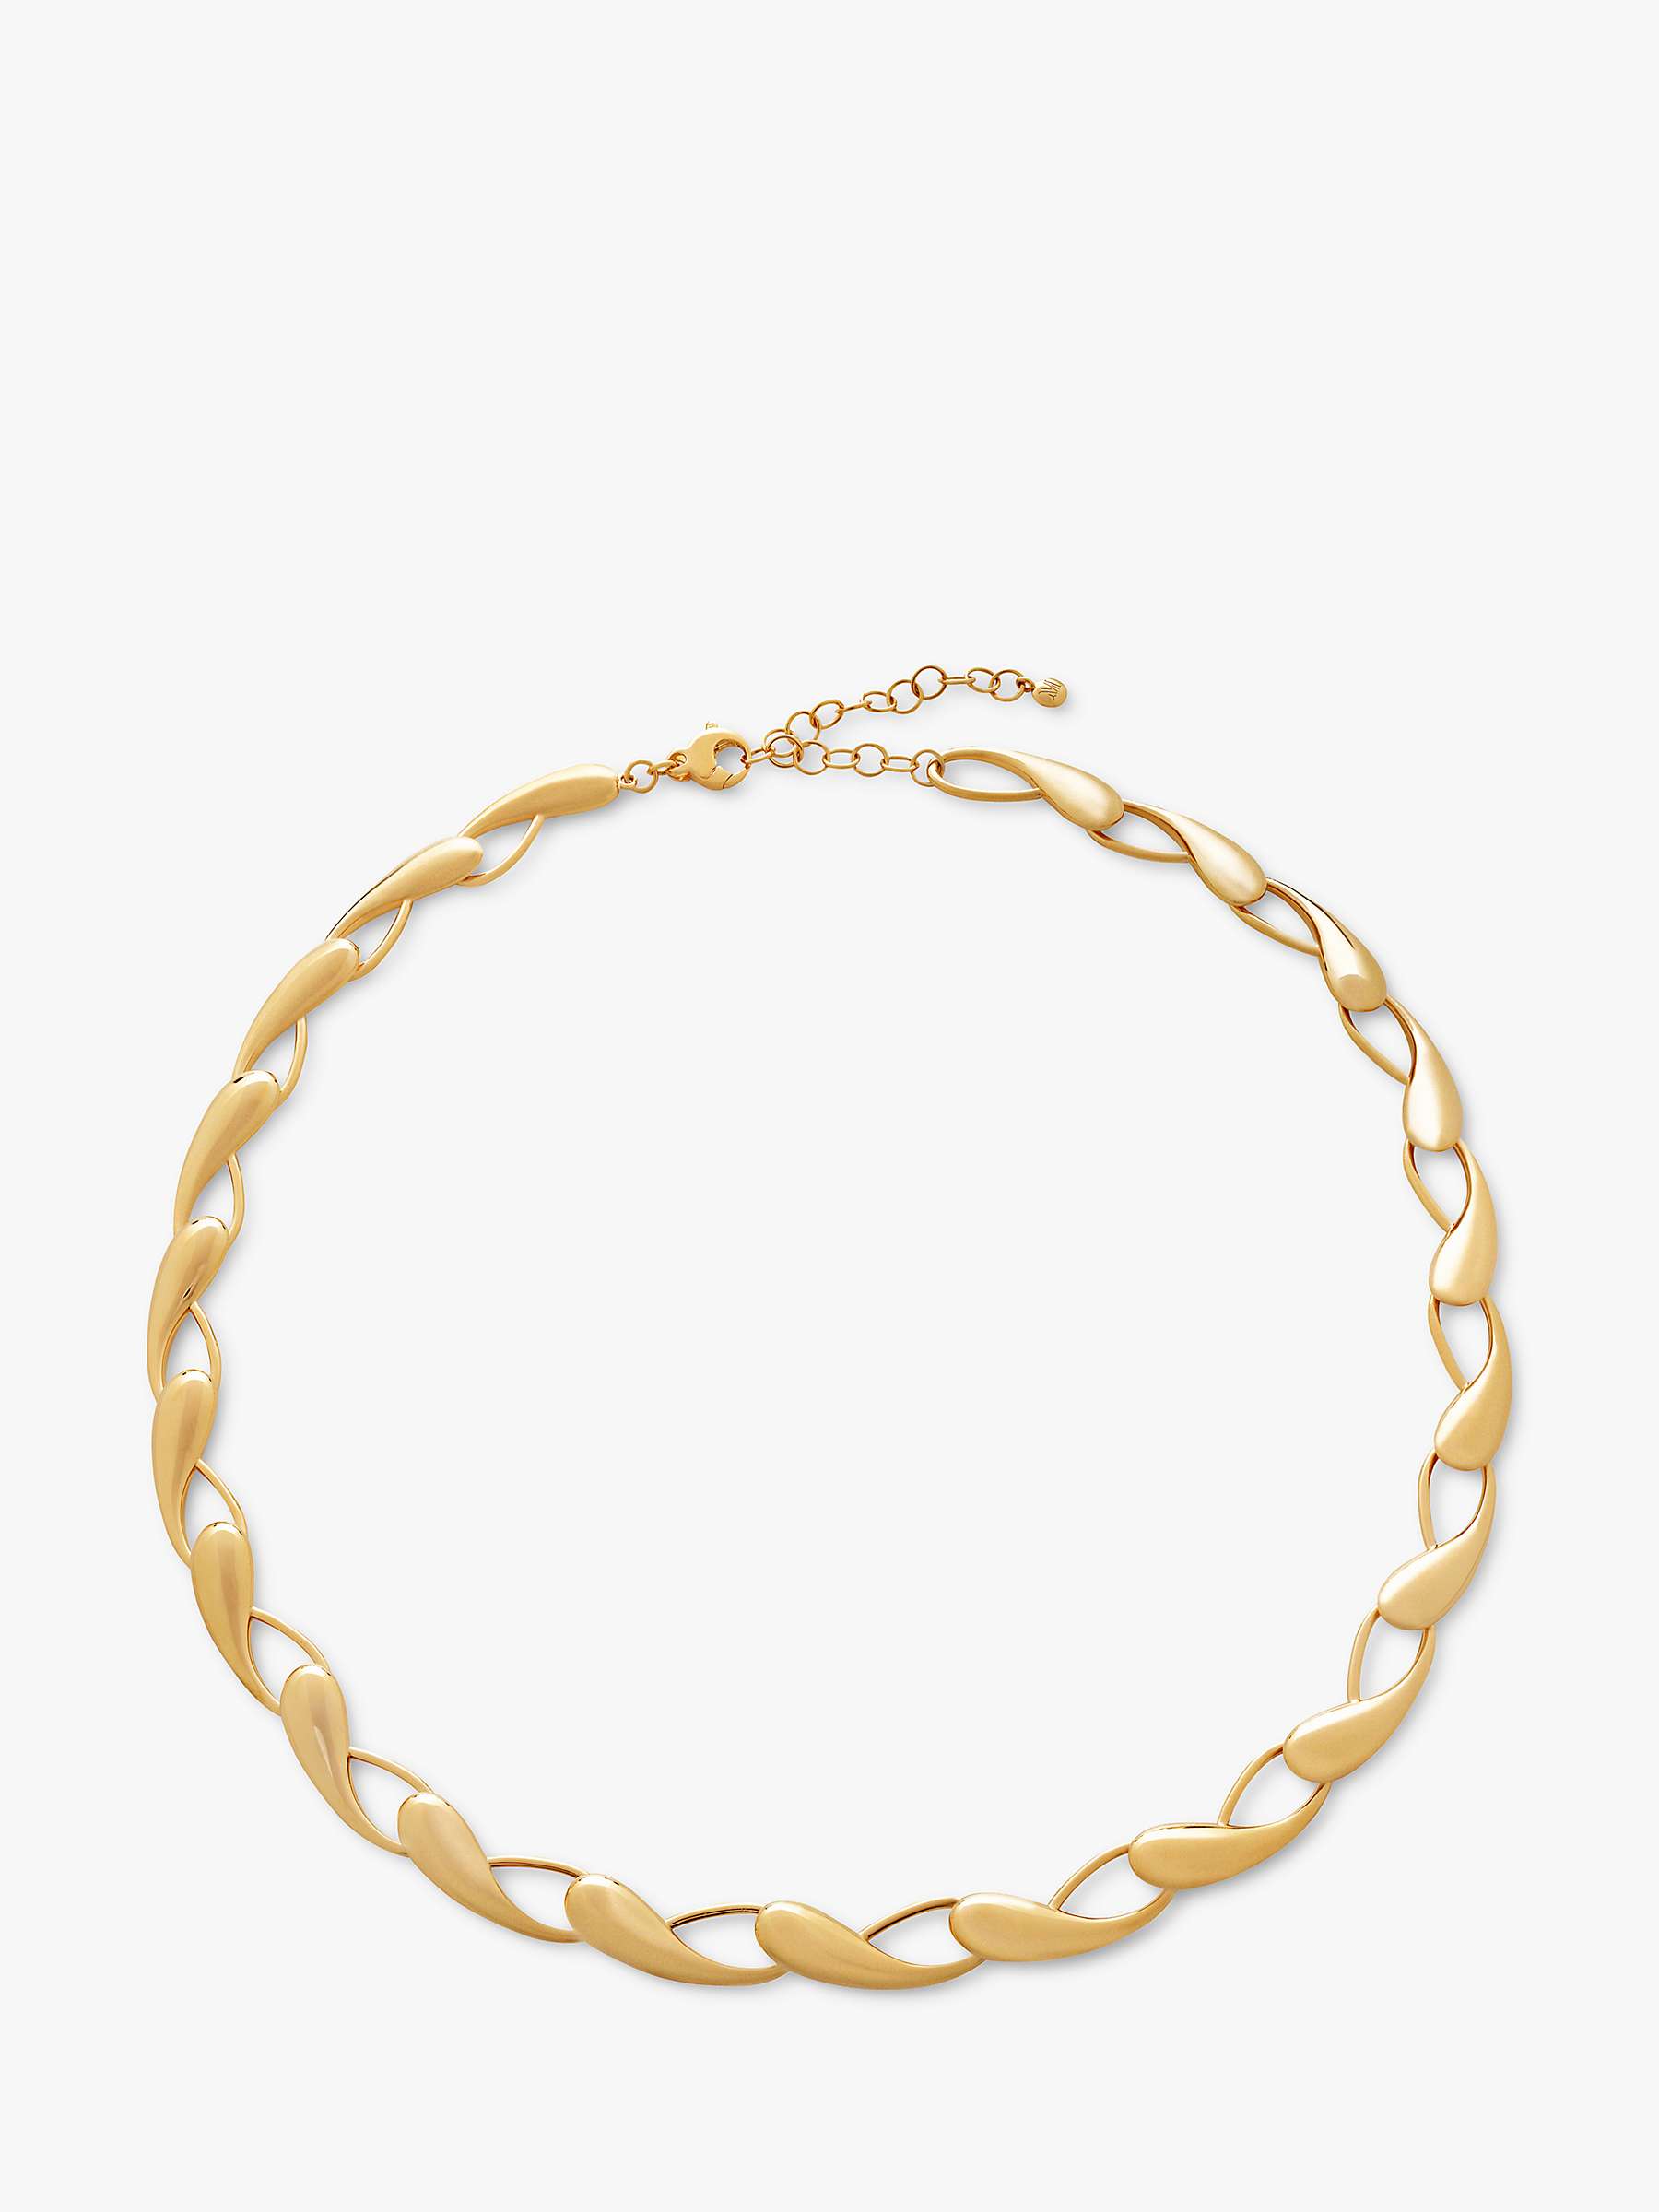 Buy Monica Vinader Nura Choker Necklace, Gold Online at johnlewis.com